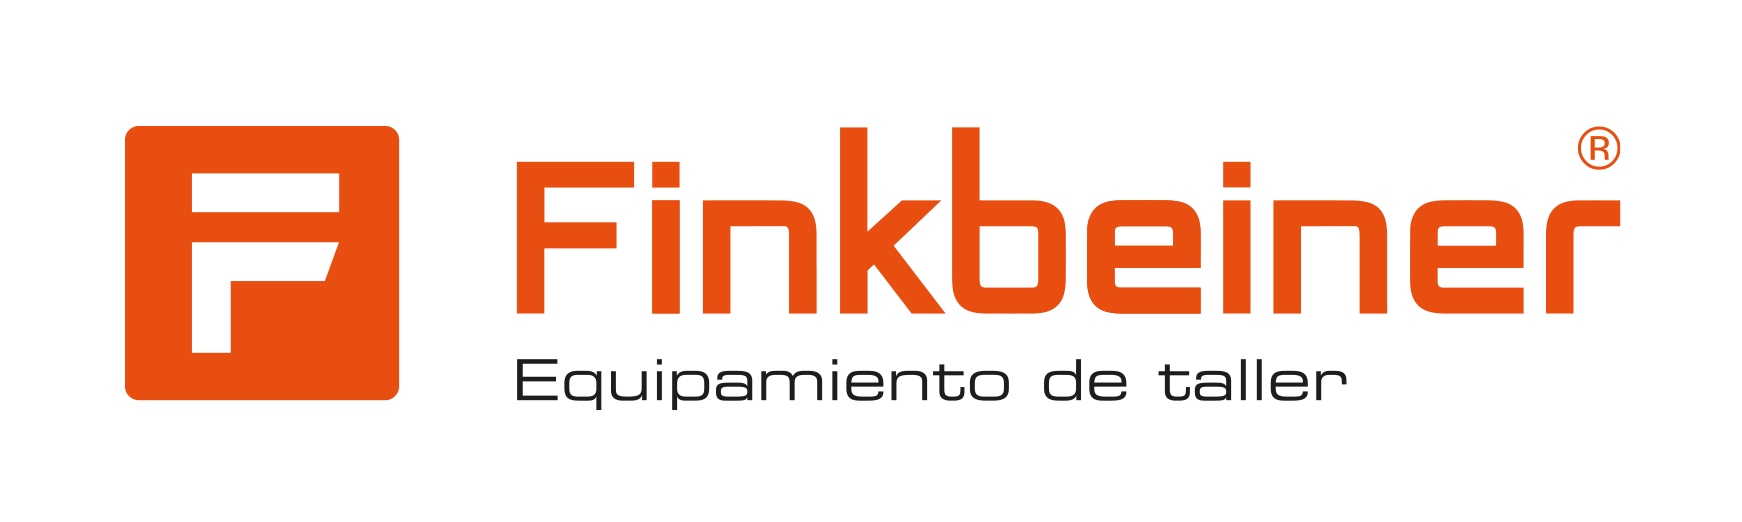 2021 Tochtergesellschaft Finkbeiner Iberia